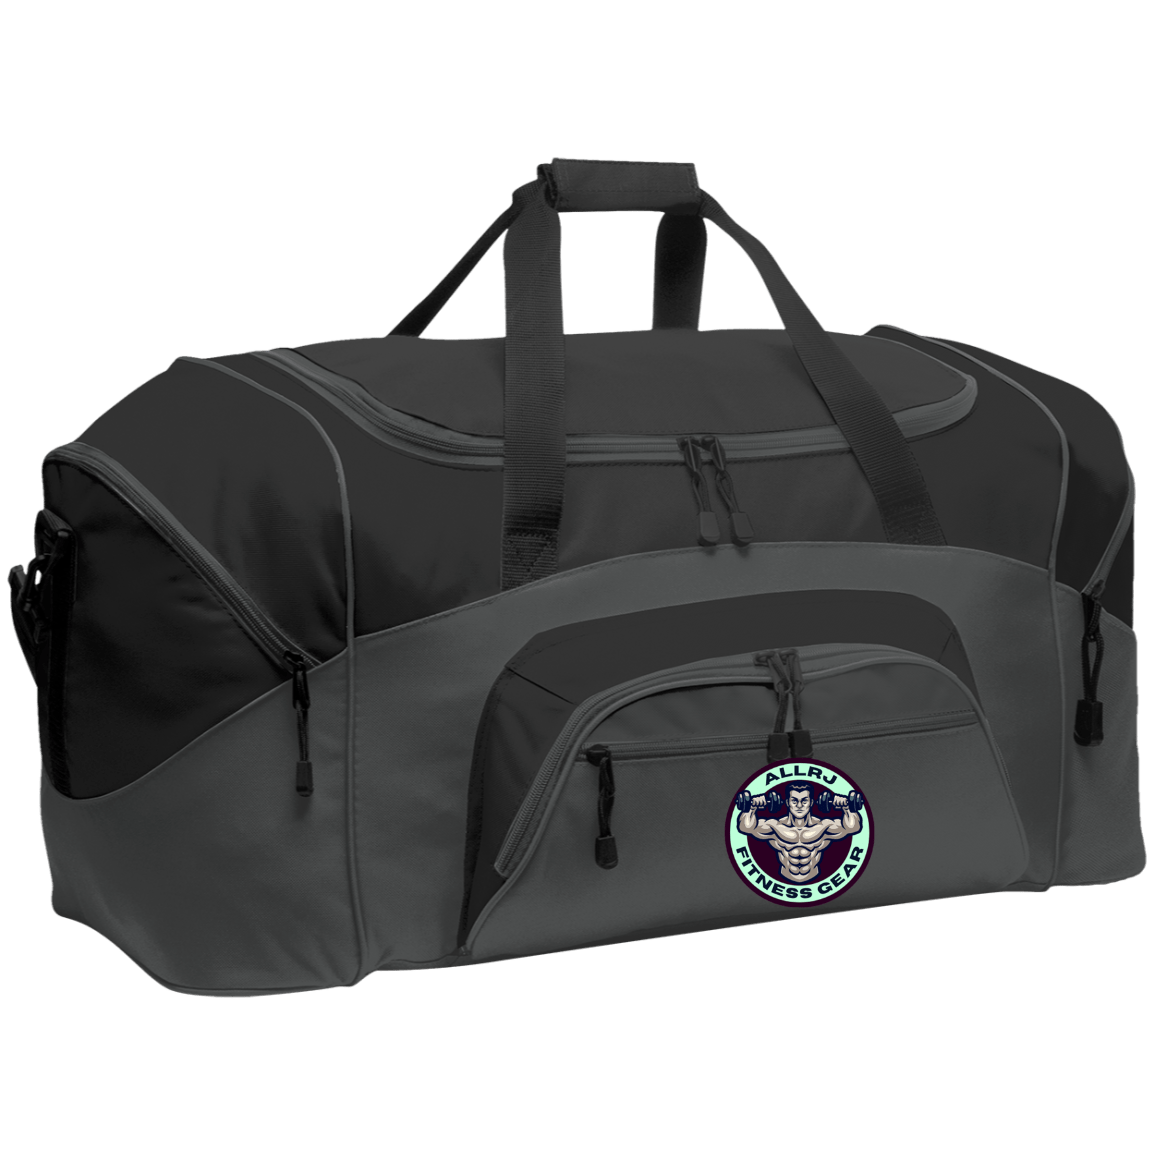 Allrj Gym Gains Duffel Bag Dark Charcoal/Black One Size